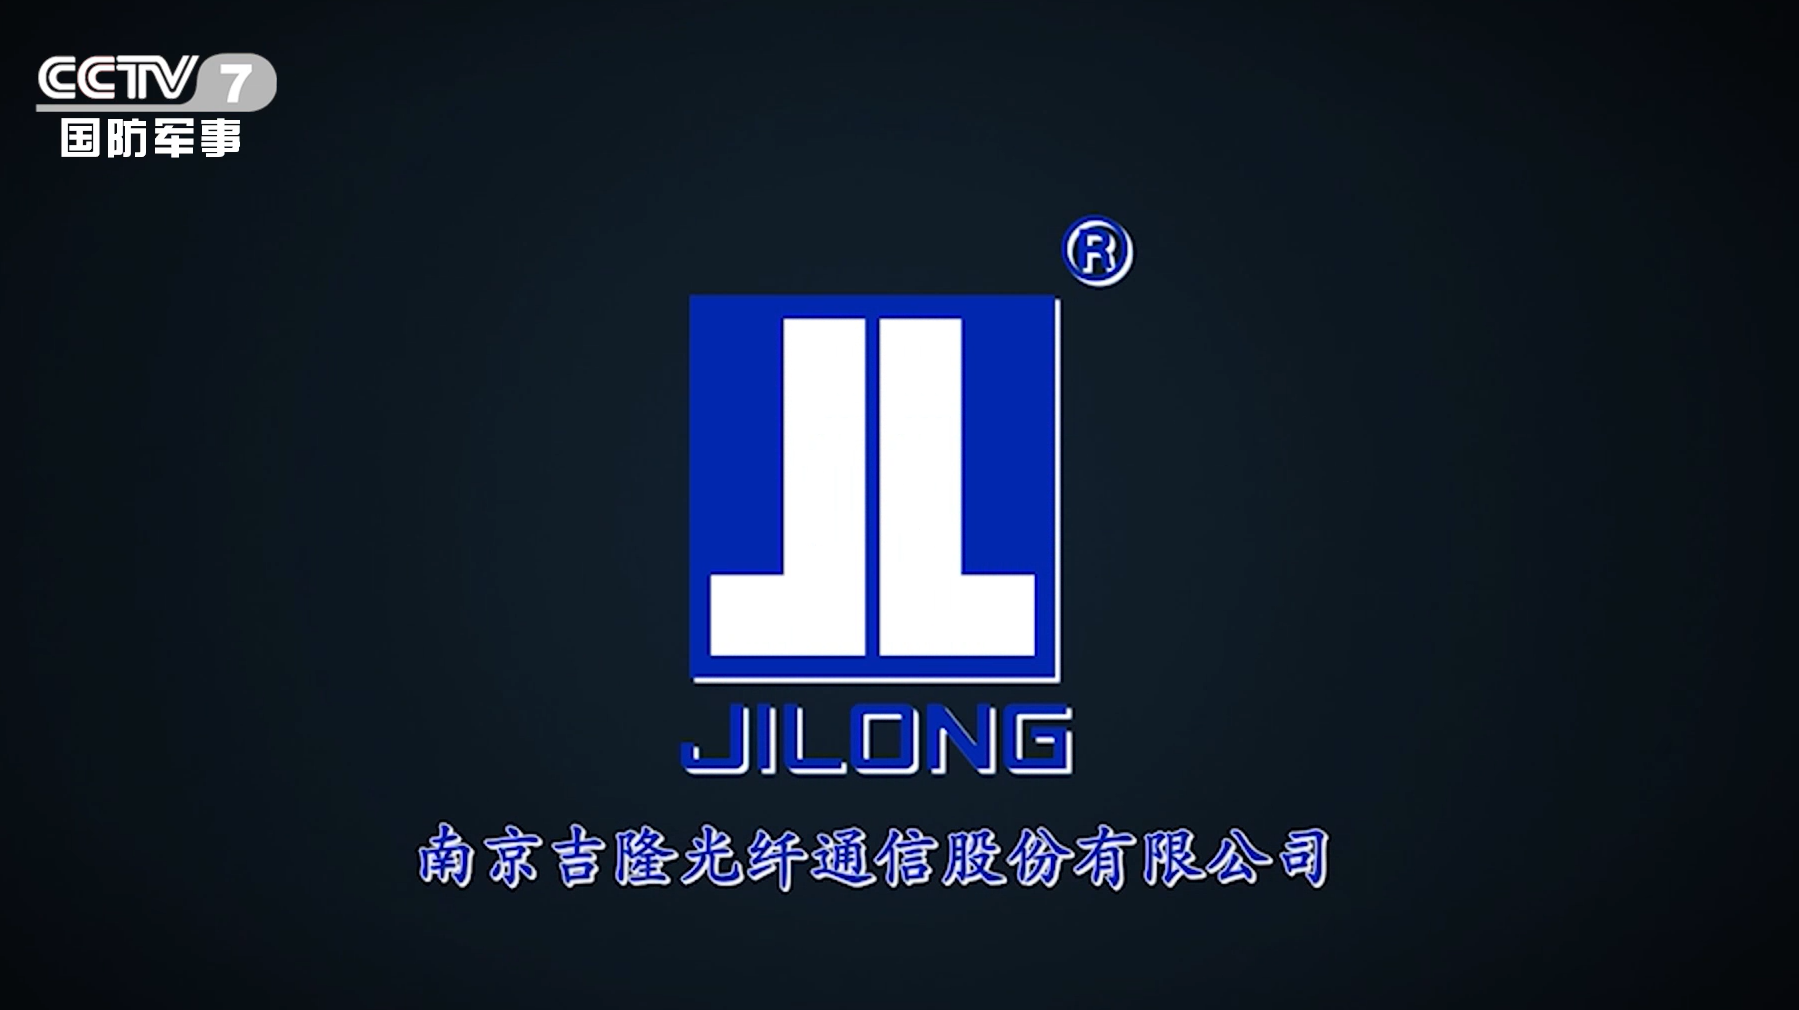 Splicer de fusão de fibra óptica Jilong